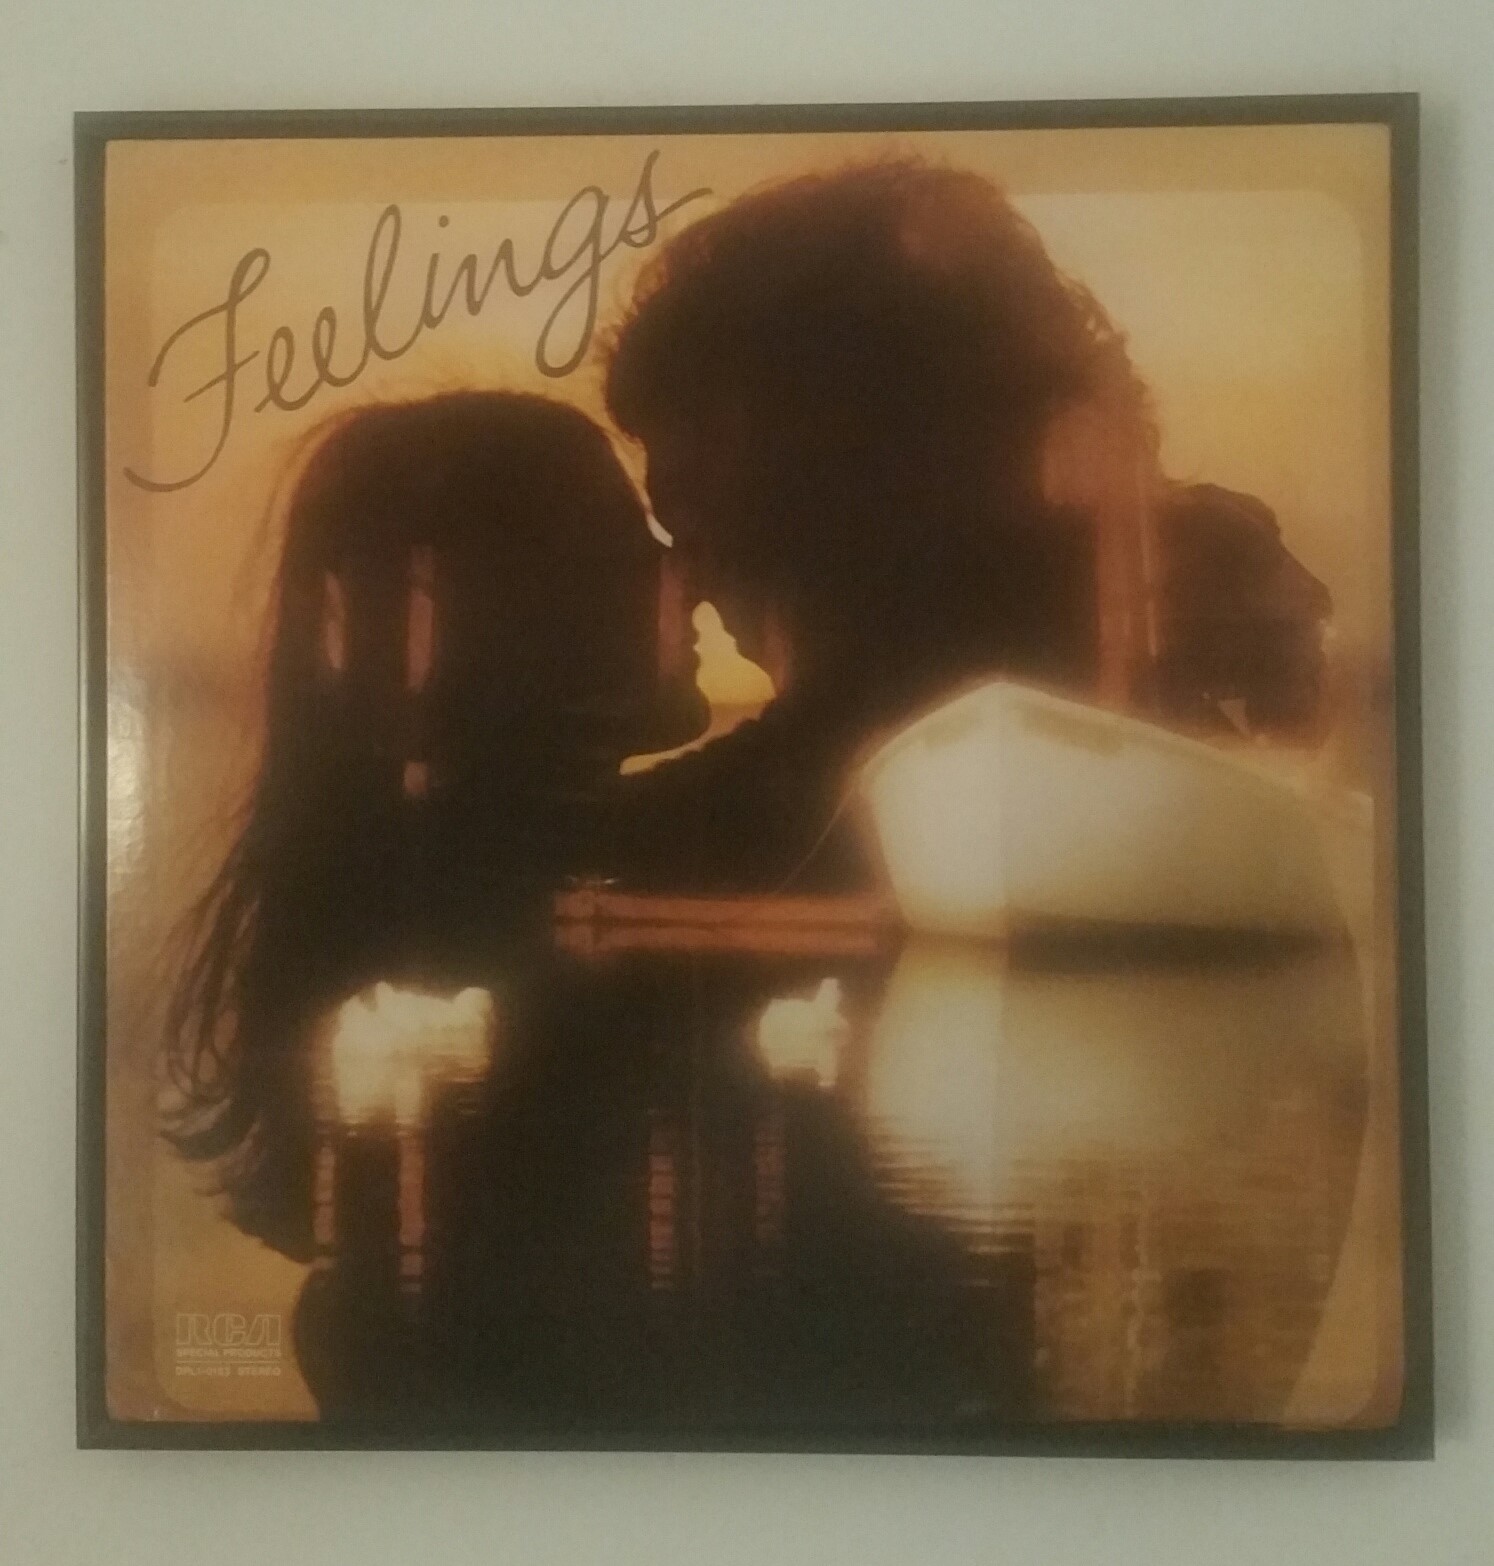 Feelings - A 1976 RCA 